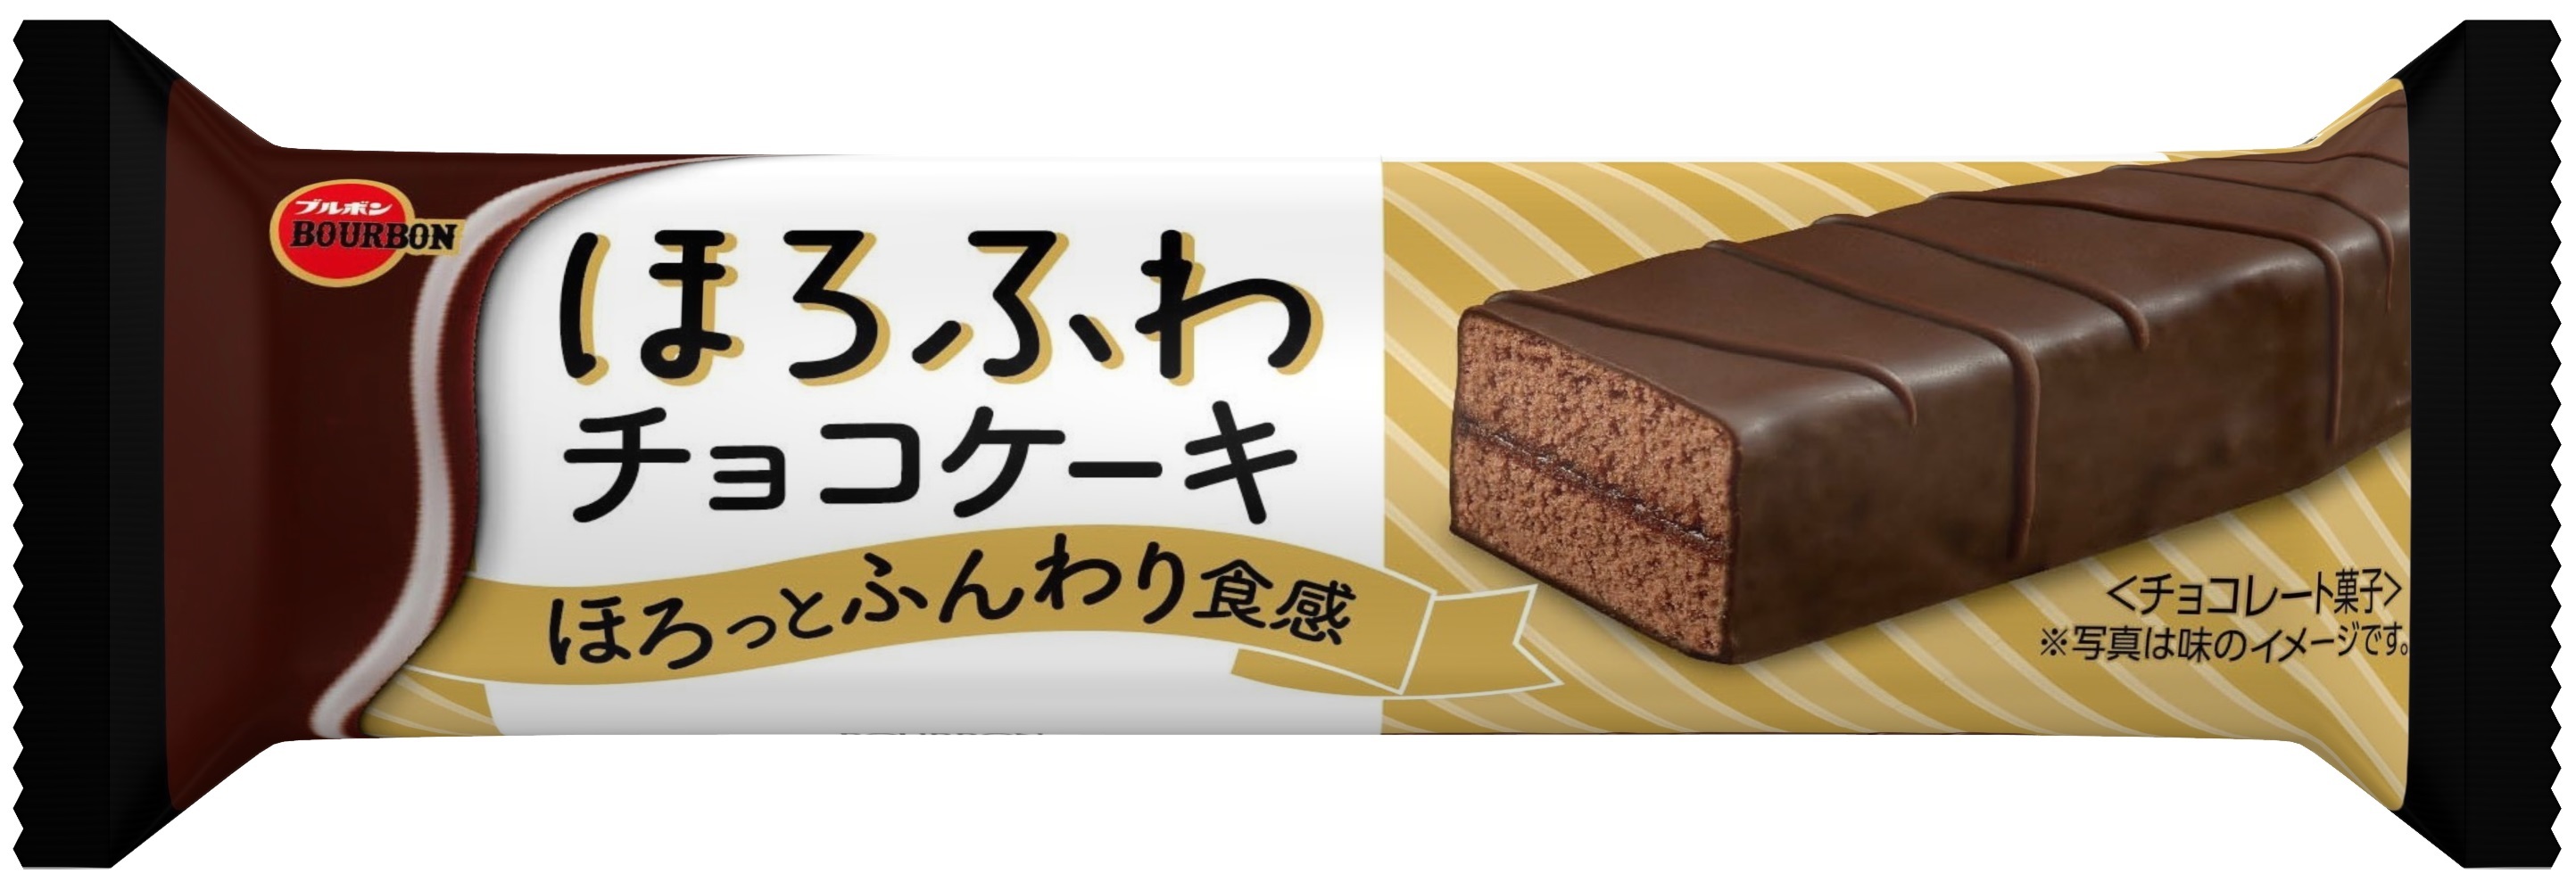 ブルボン 食べきりサイズのバータイプスイーツに ほろふわチョコケーキ が10月6日 火 に新登場 芸能社会 Sanspo Com サンスポ